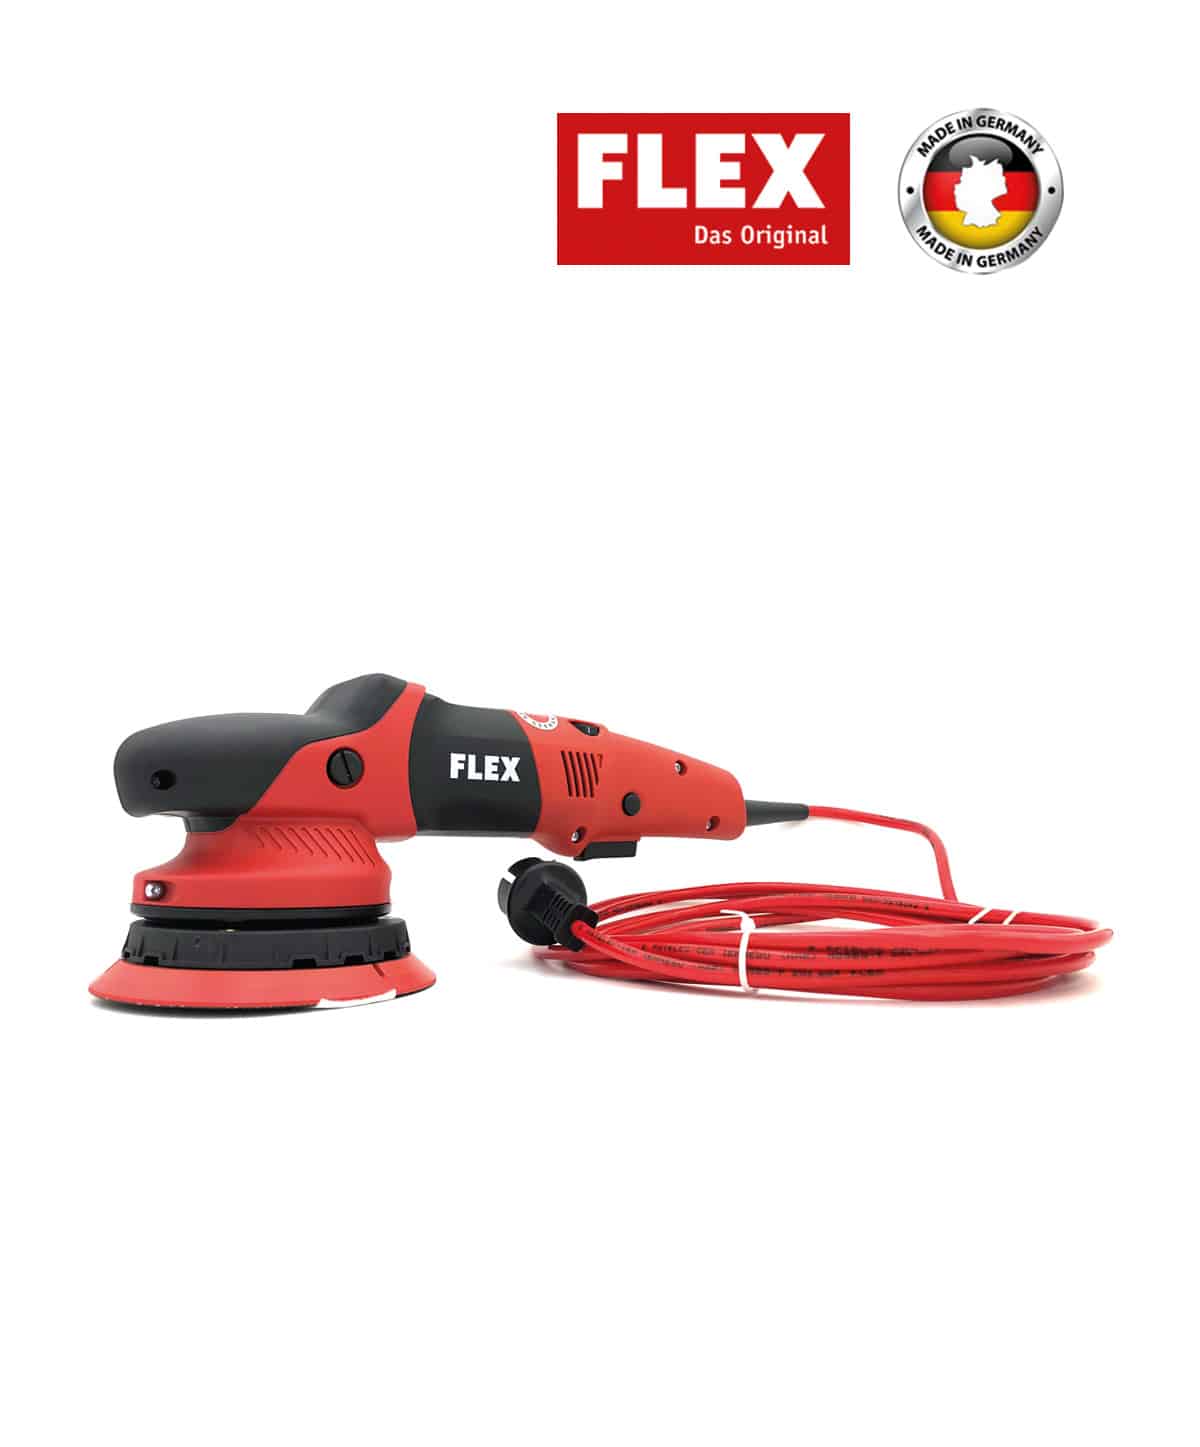 flex xfe 7 15 150 review